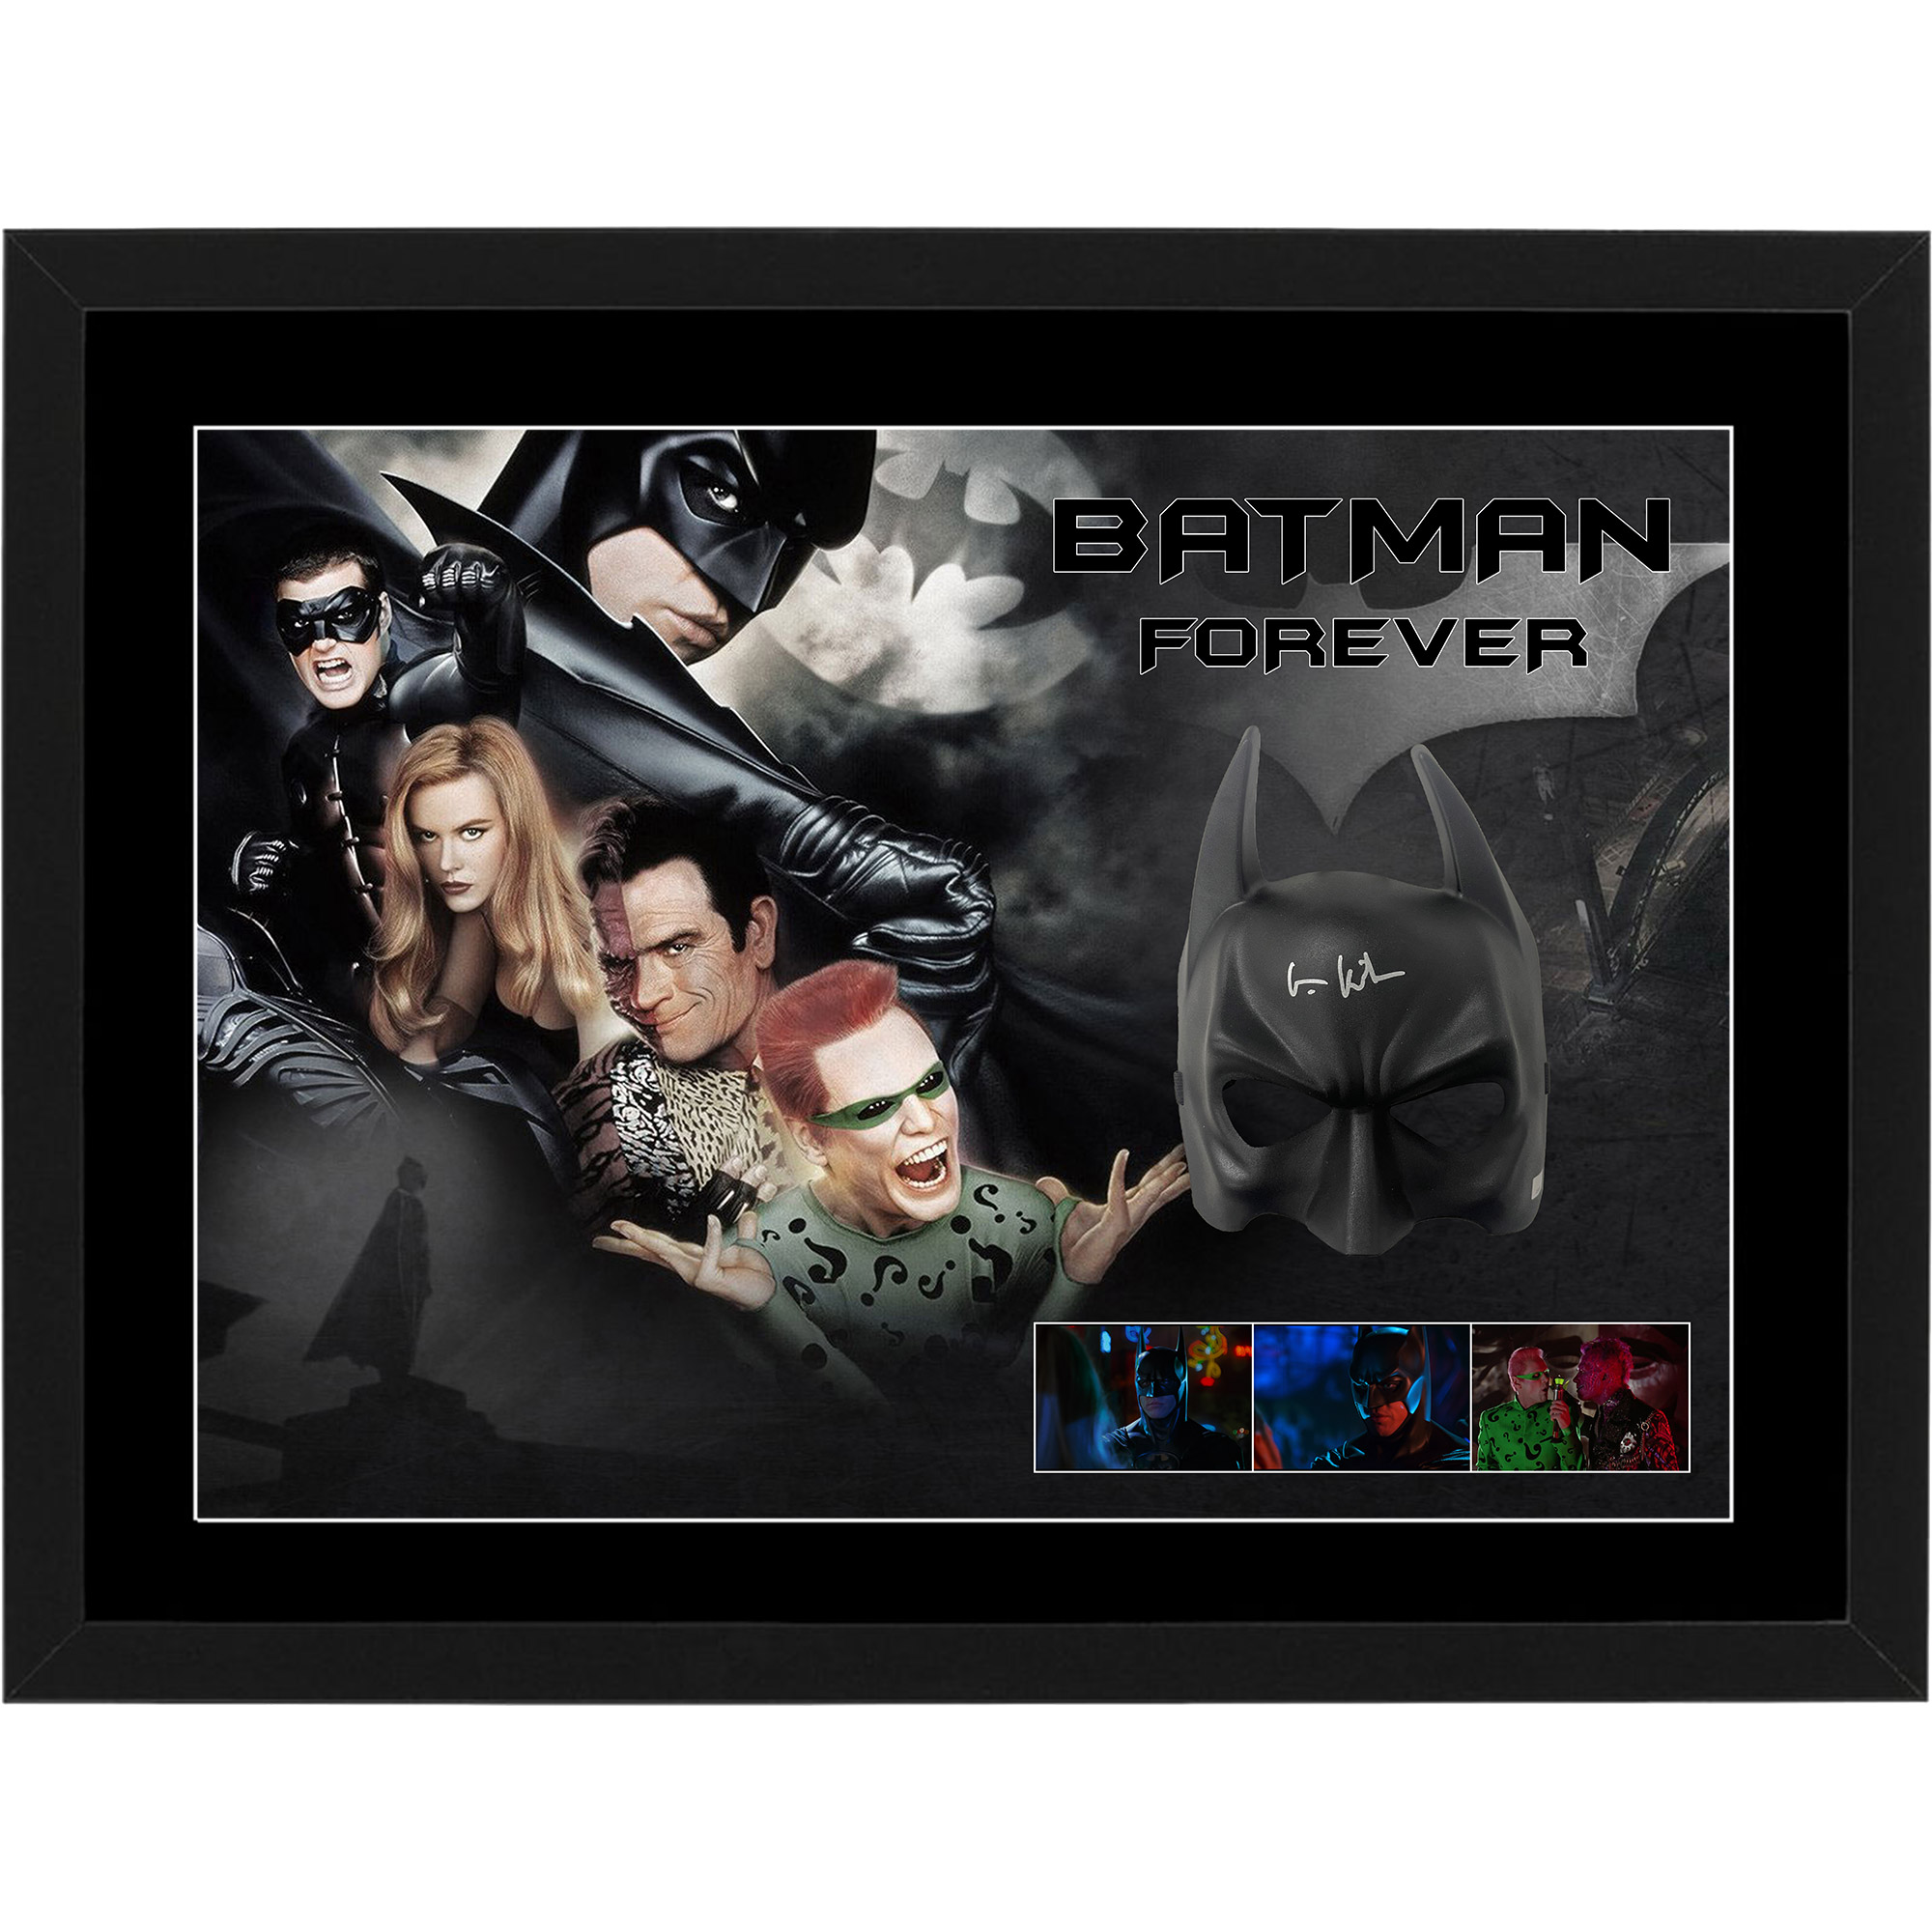 VAL KILMER – Signed & Framed “Batman Forever” B...